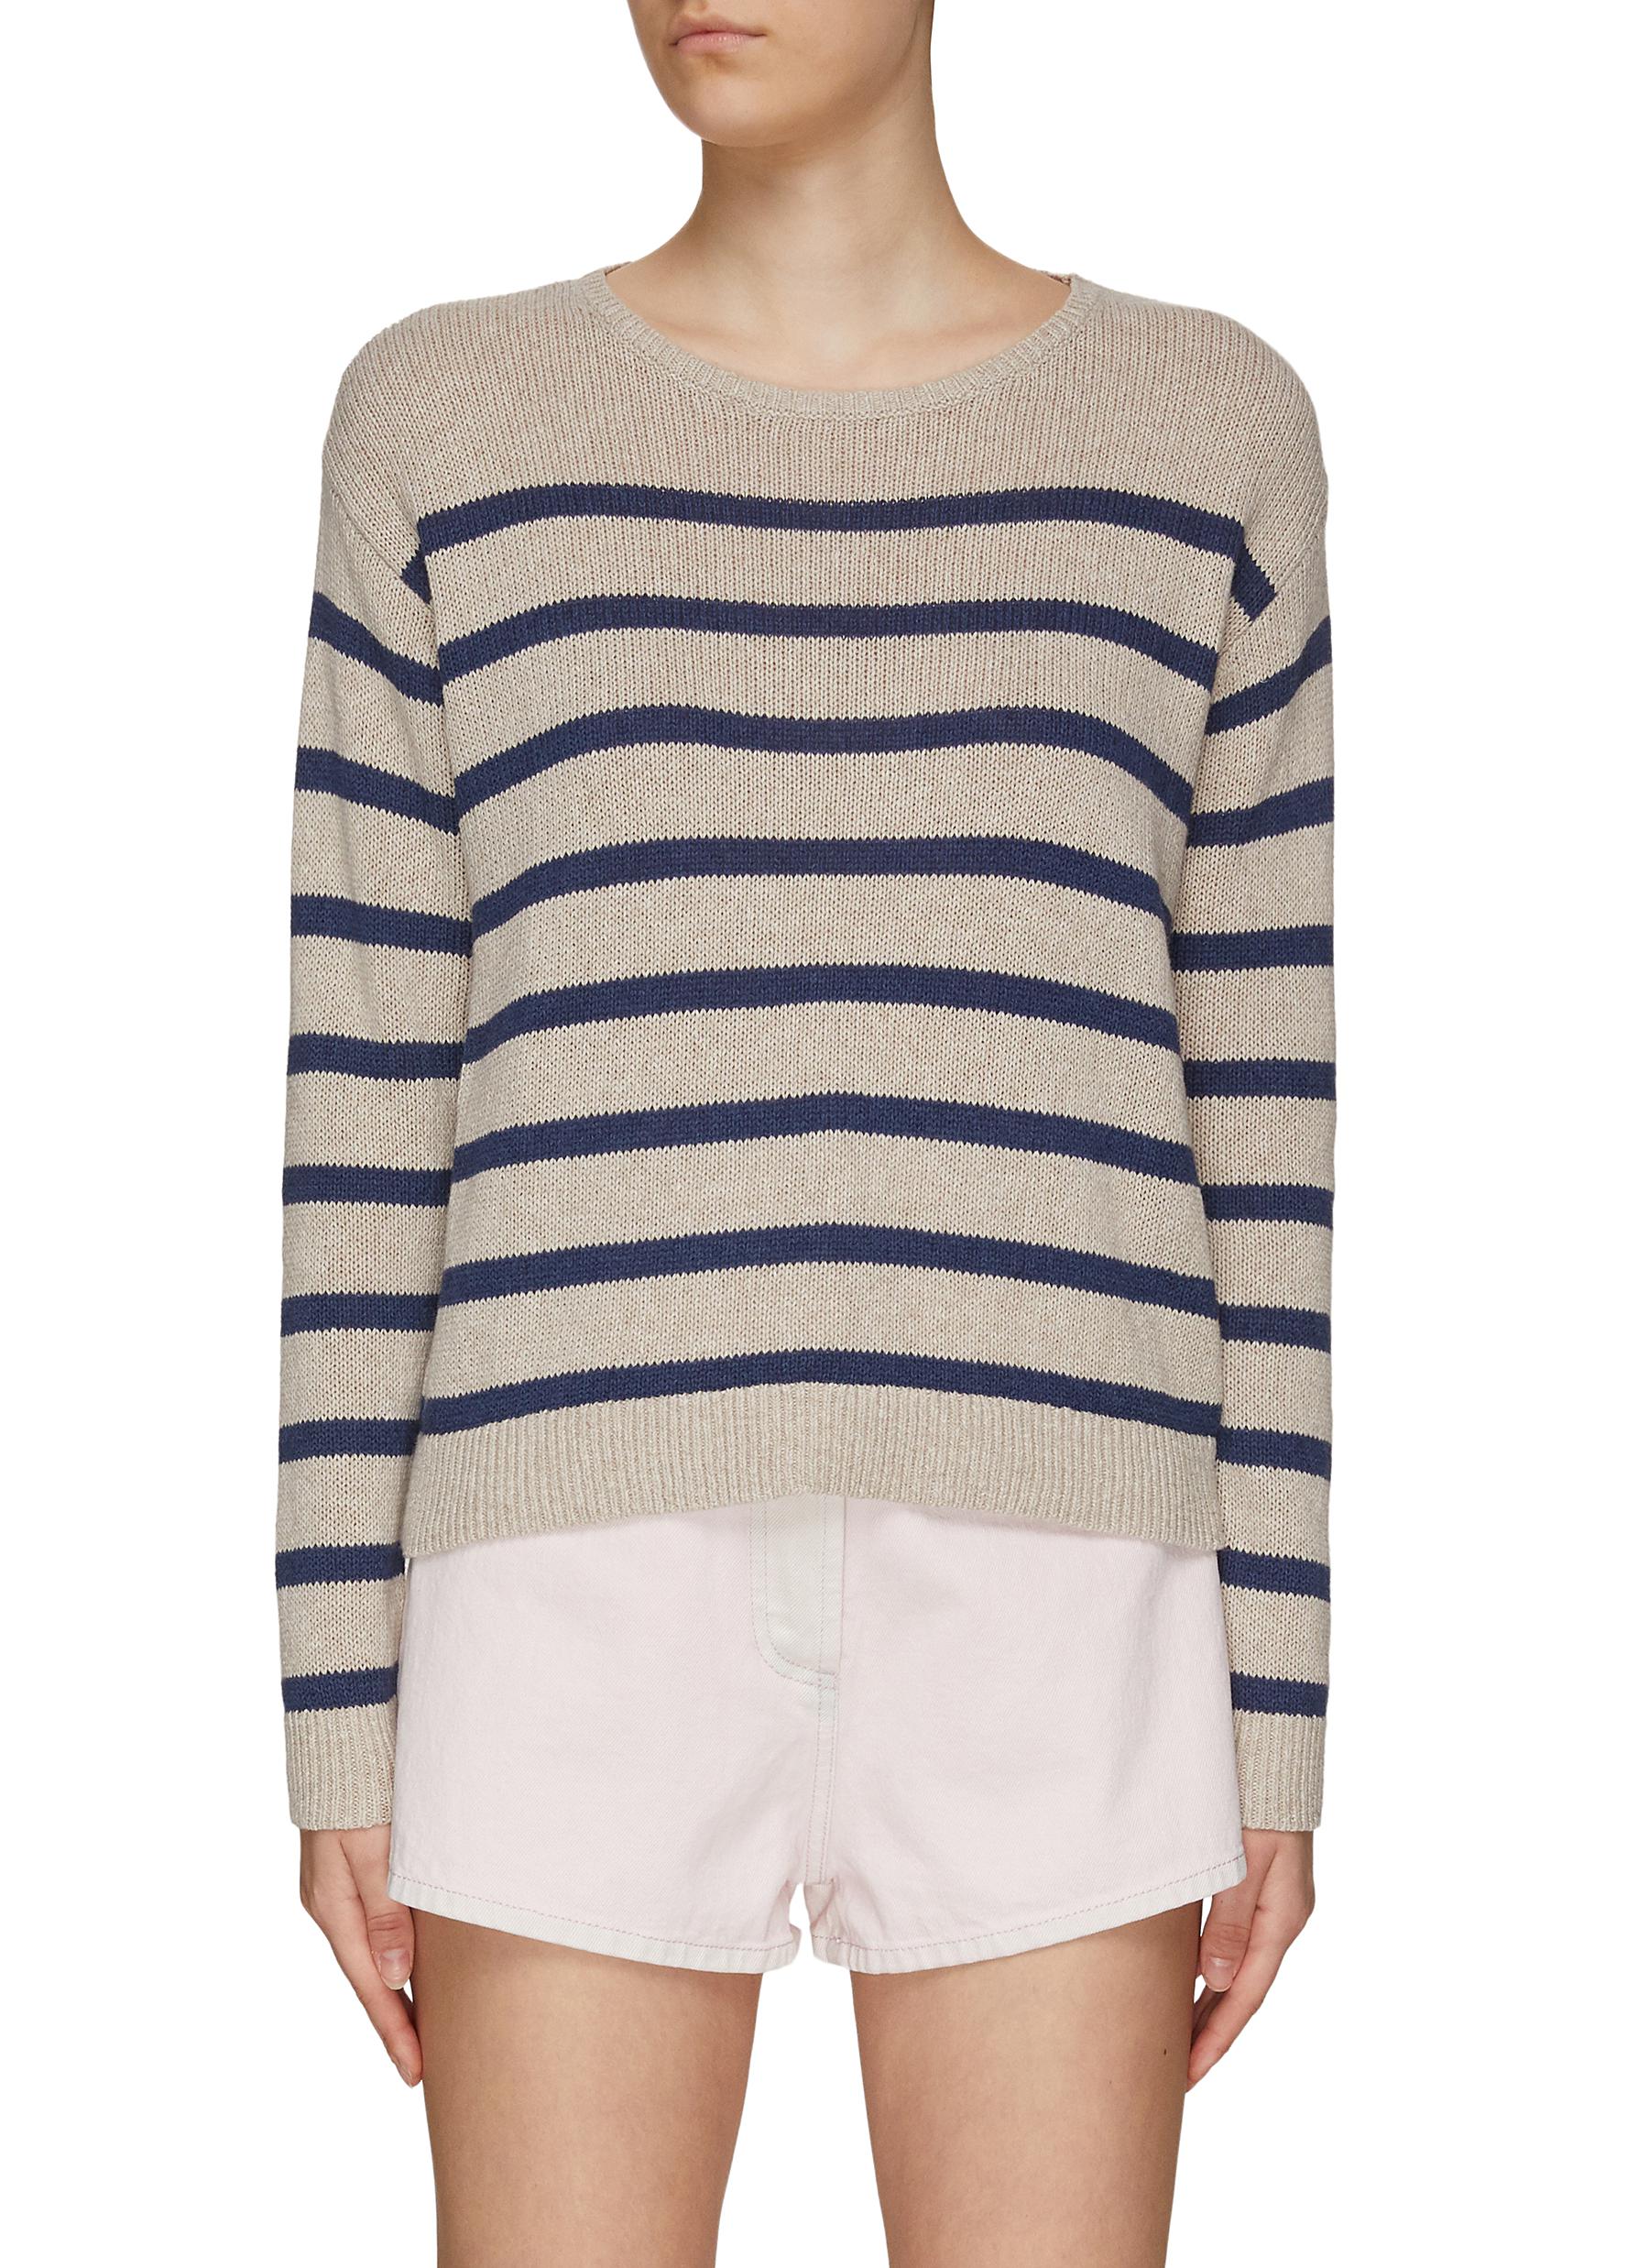 KULE ‘The Finn' Striped Cotton Blend Knit Sweater